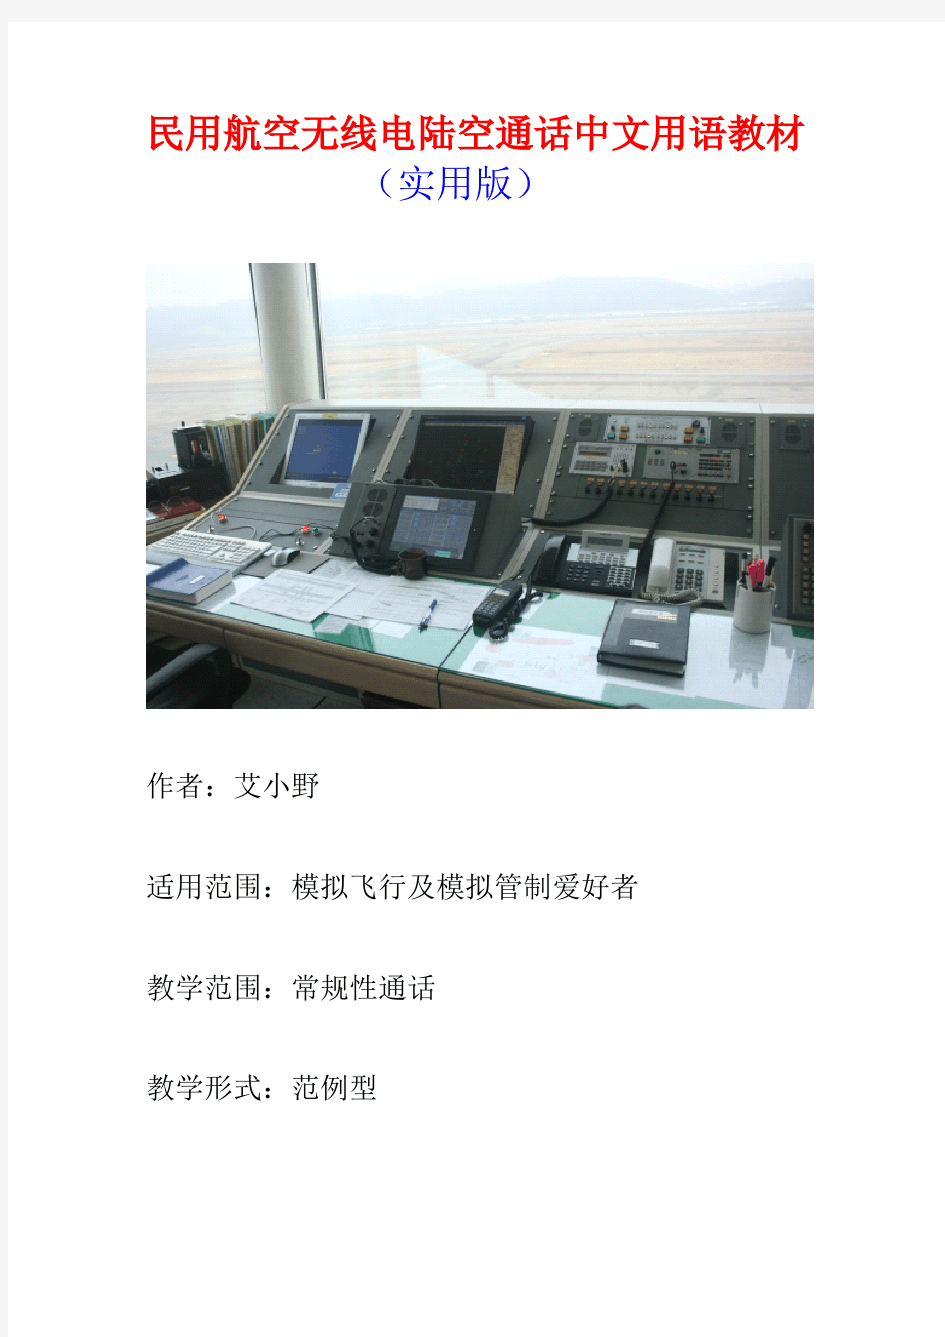 民用航空无线电陆空通话中文用语教材